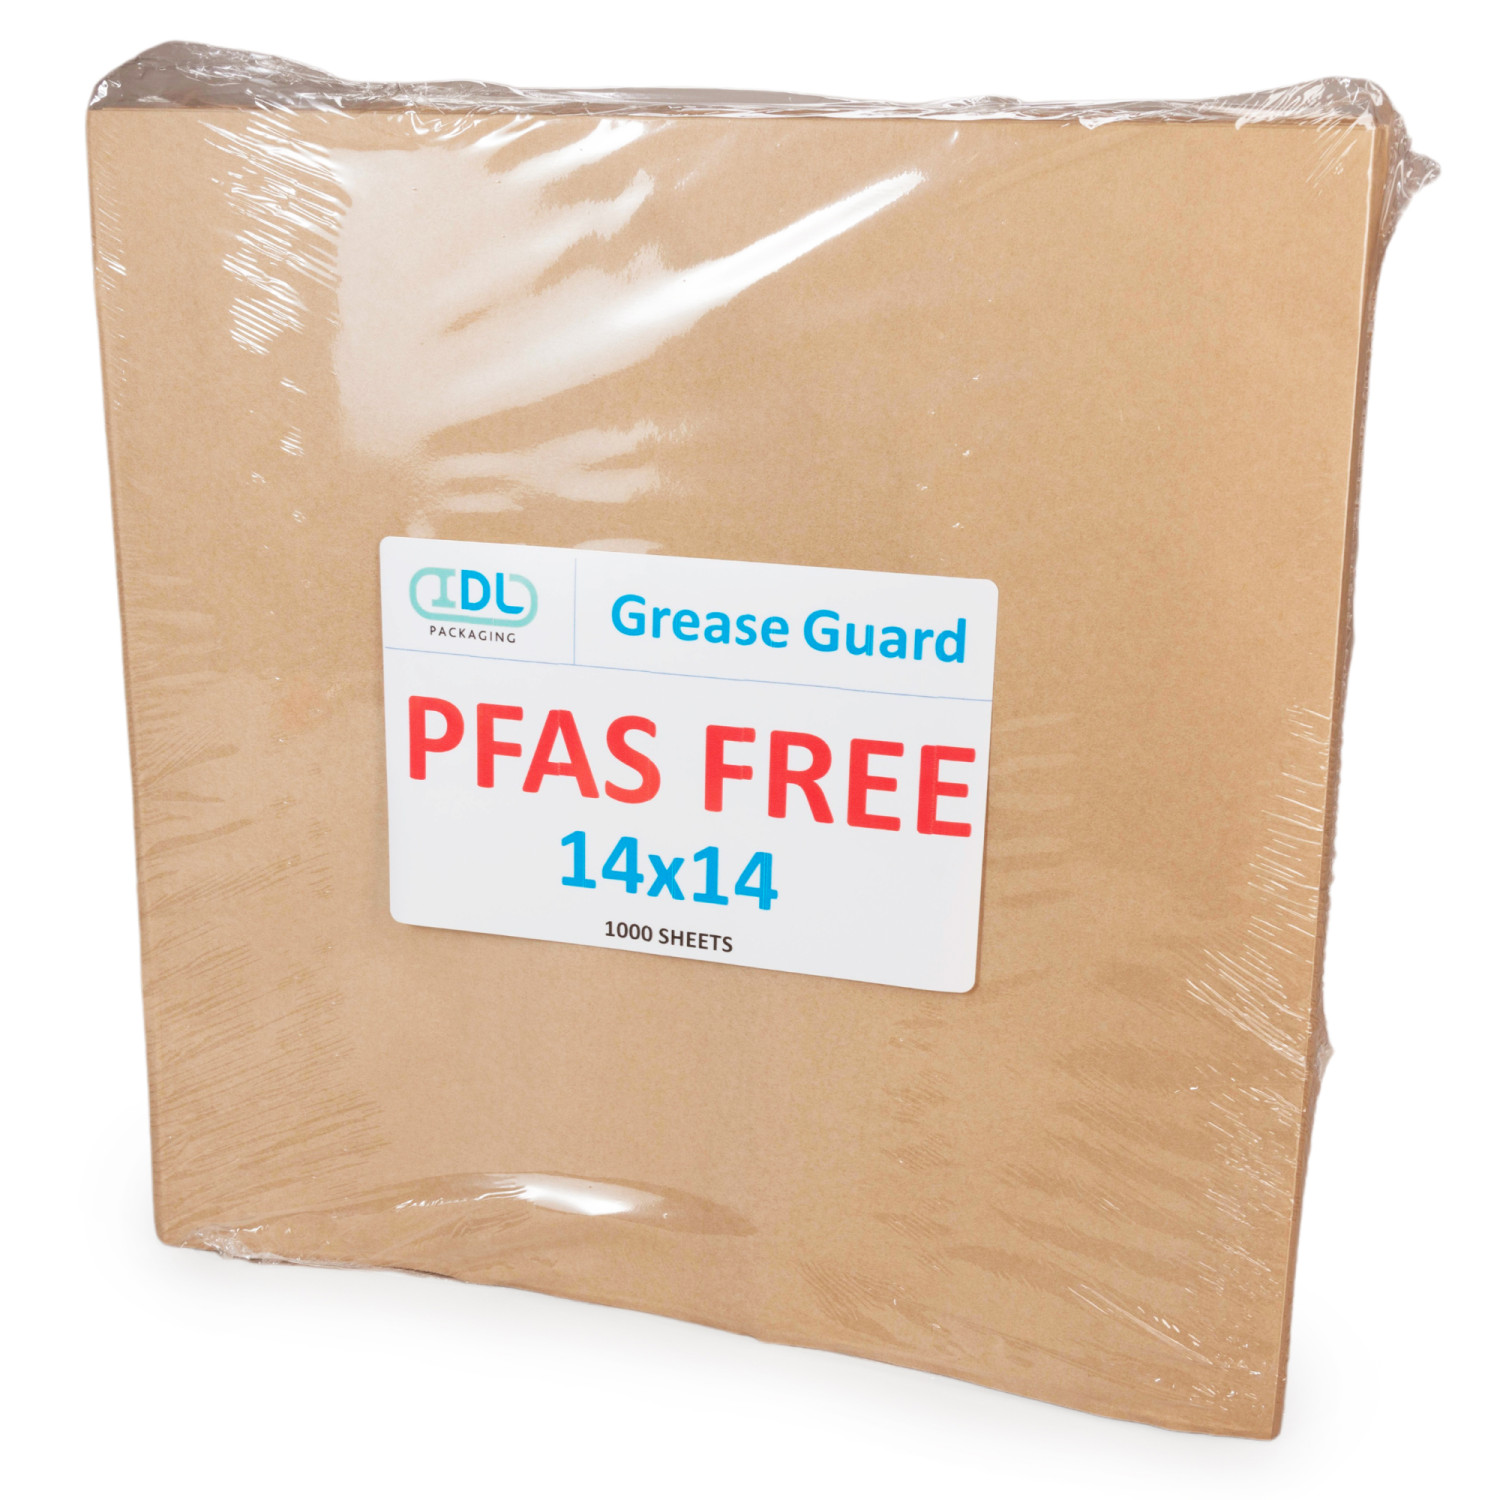 8 x 9.75 Vela™ Clear Paper Apparel Bag, S, White buy in stock in